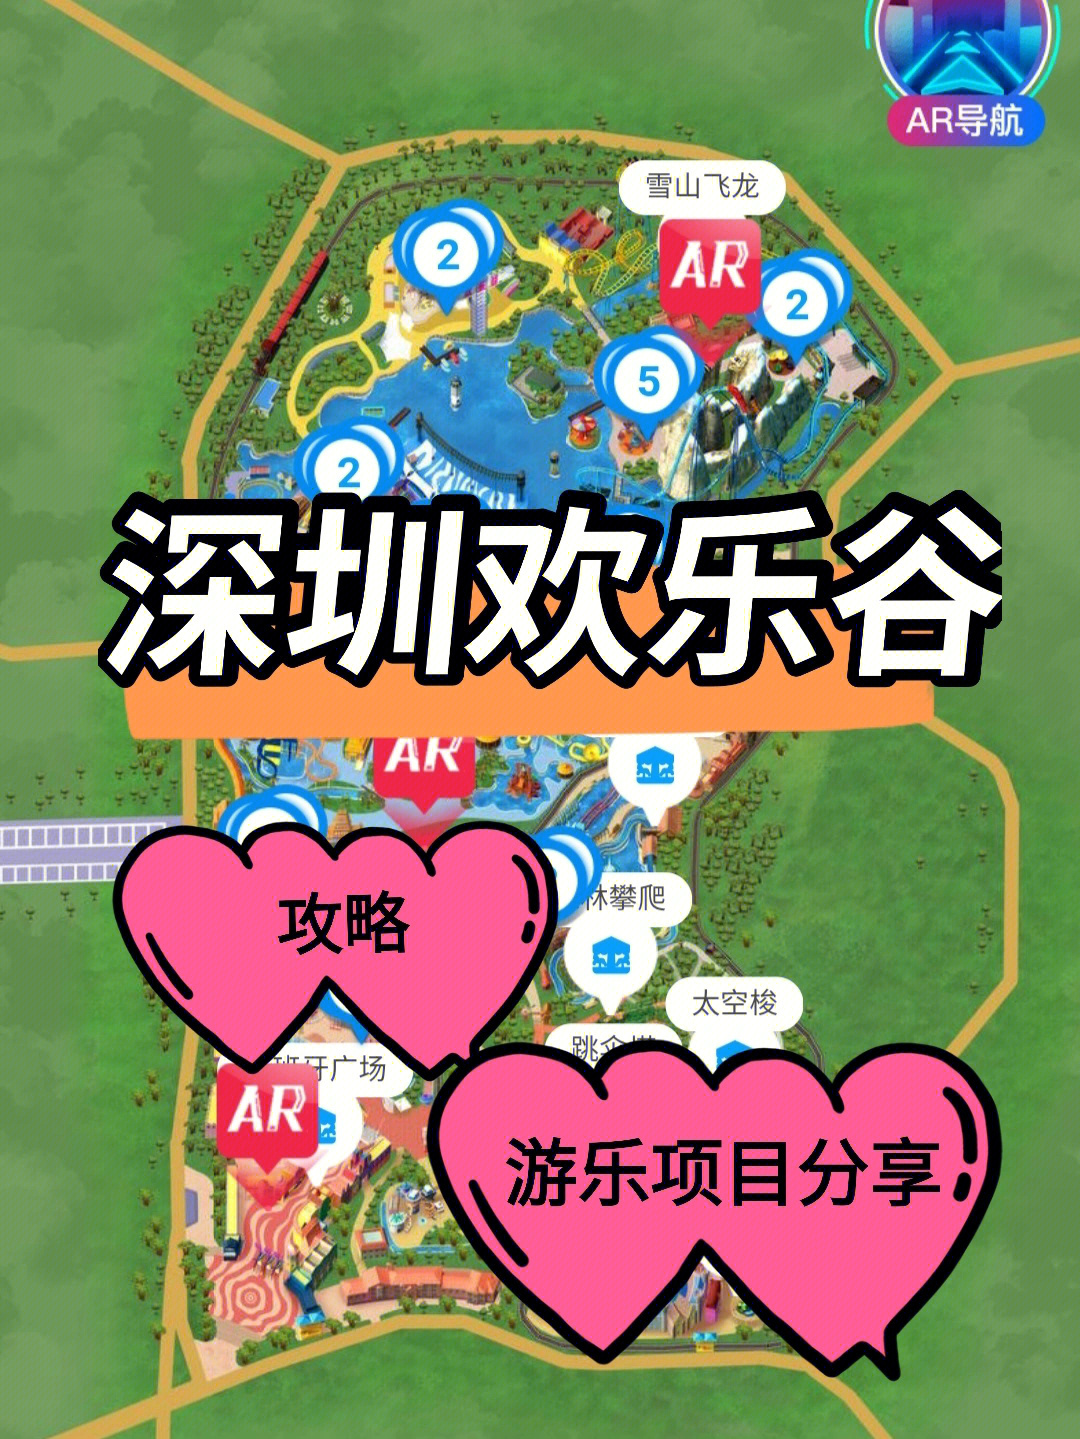 深圳欢乐谷游玩攻略图图片